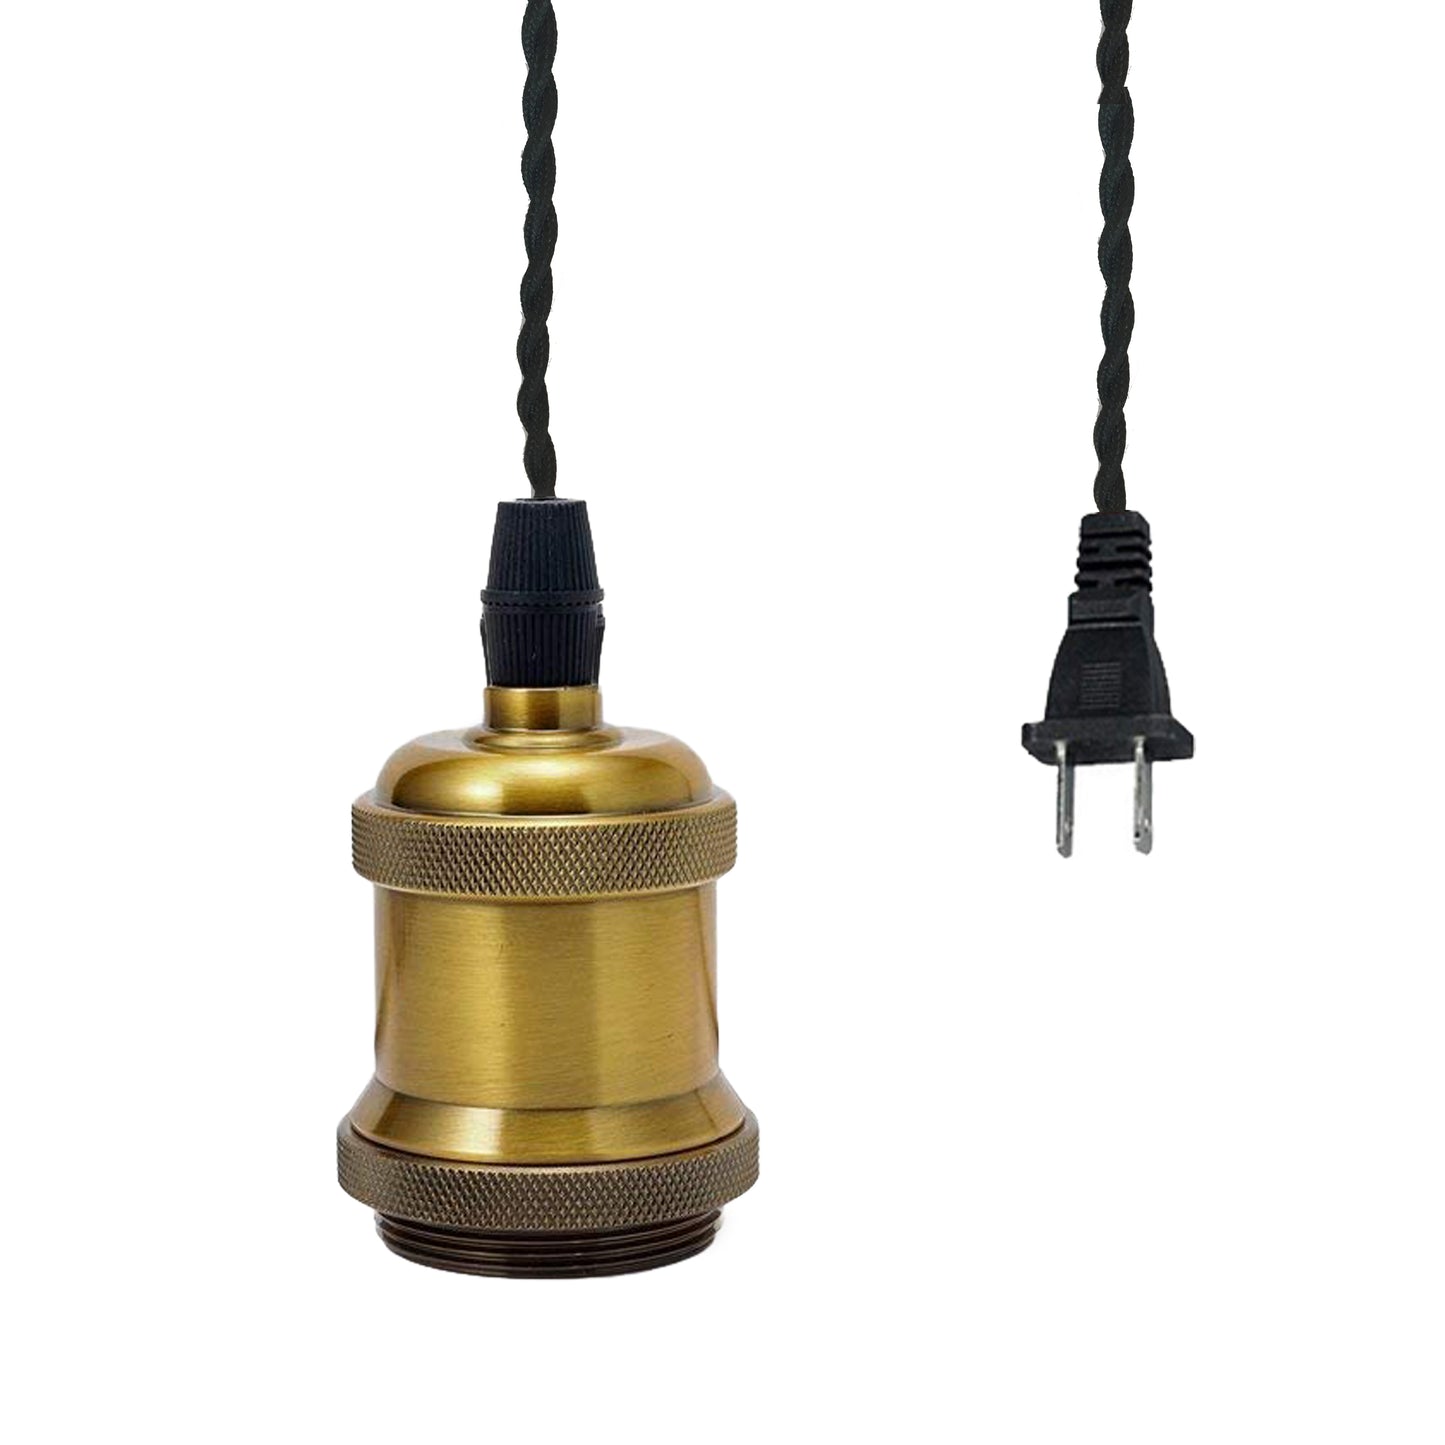 FSLIVING 1灯 レトロ カフェ 電球ソケット コンセント式(3m) 吊り下げ高さ調節可 真鍮メッキ古仕上げ アルミ製 ツイストコードおしゃれ LED対応 一灯ペンダント